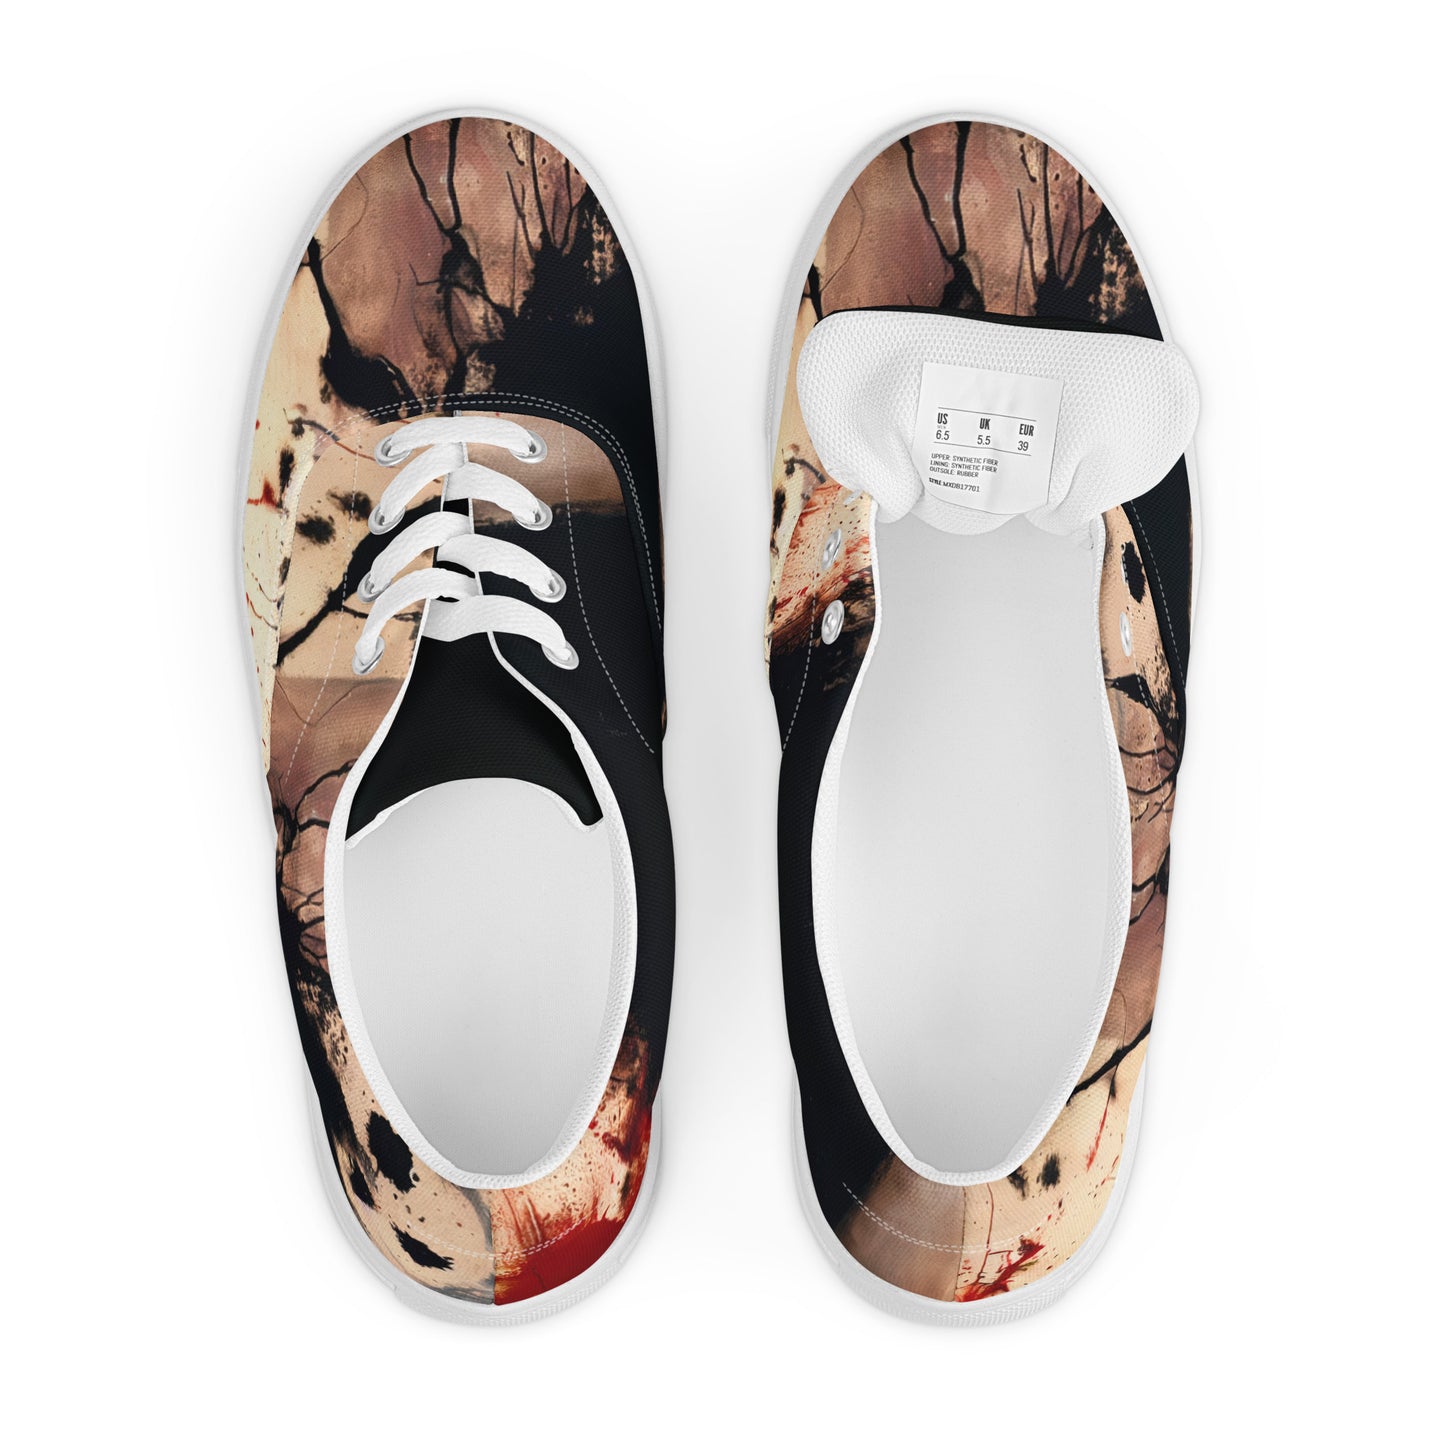 DMV 1716 Avant Garde Women’s lace-up canvas shoes